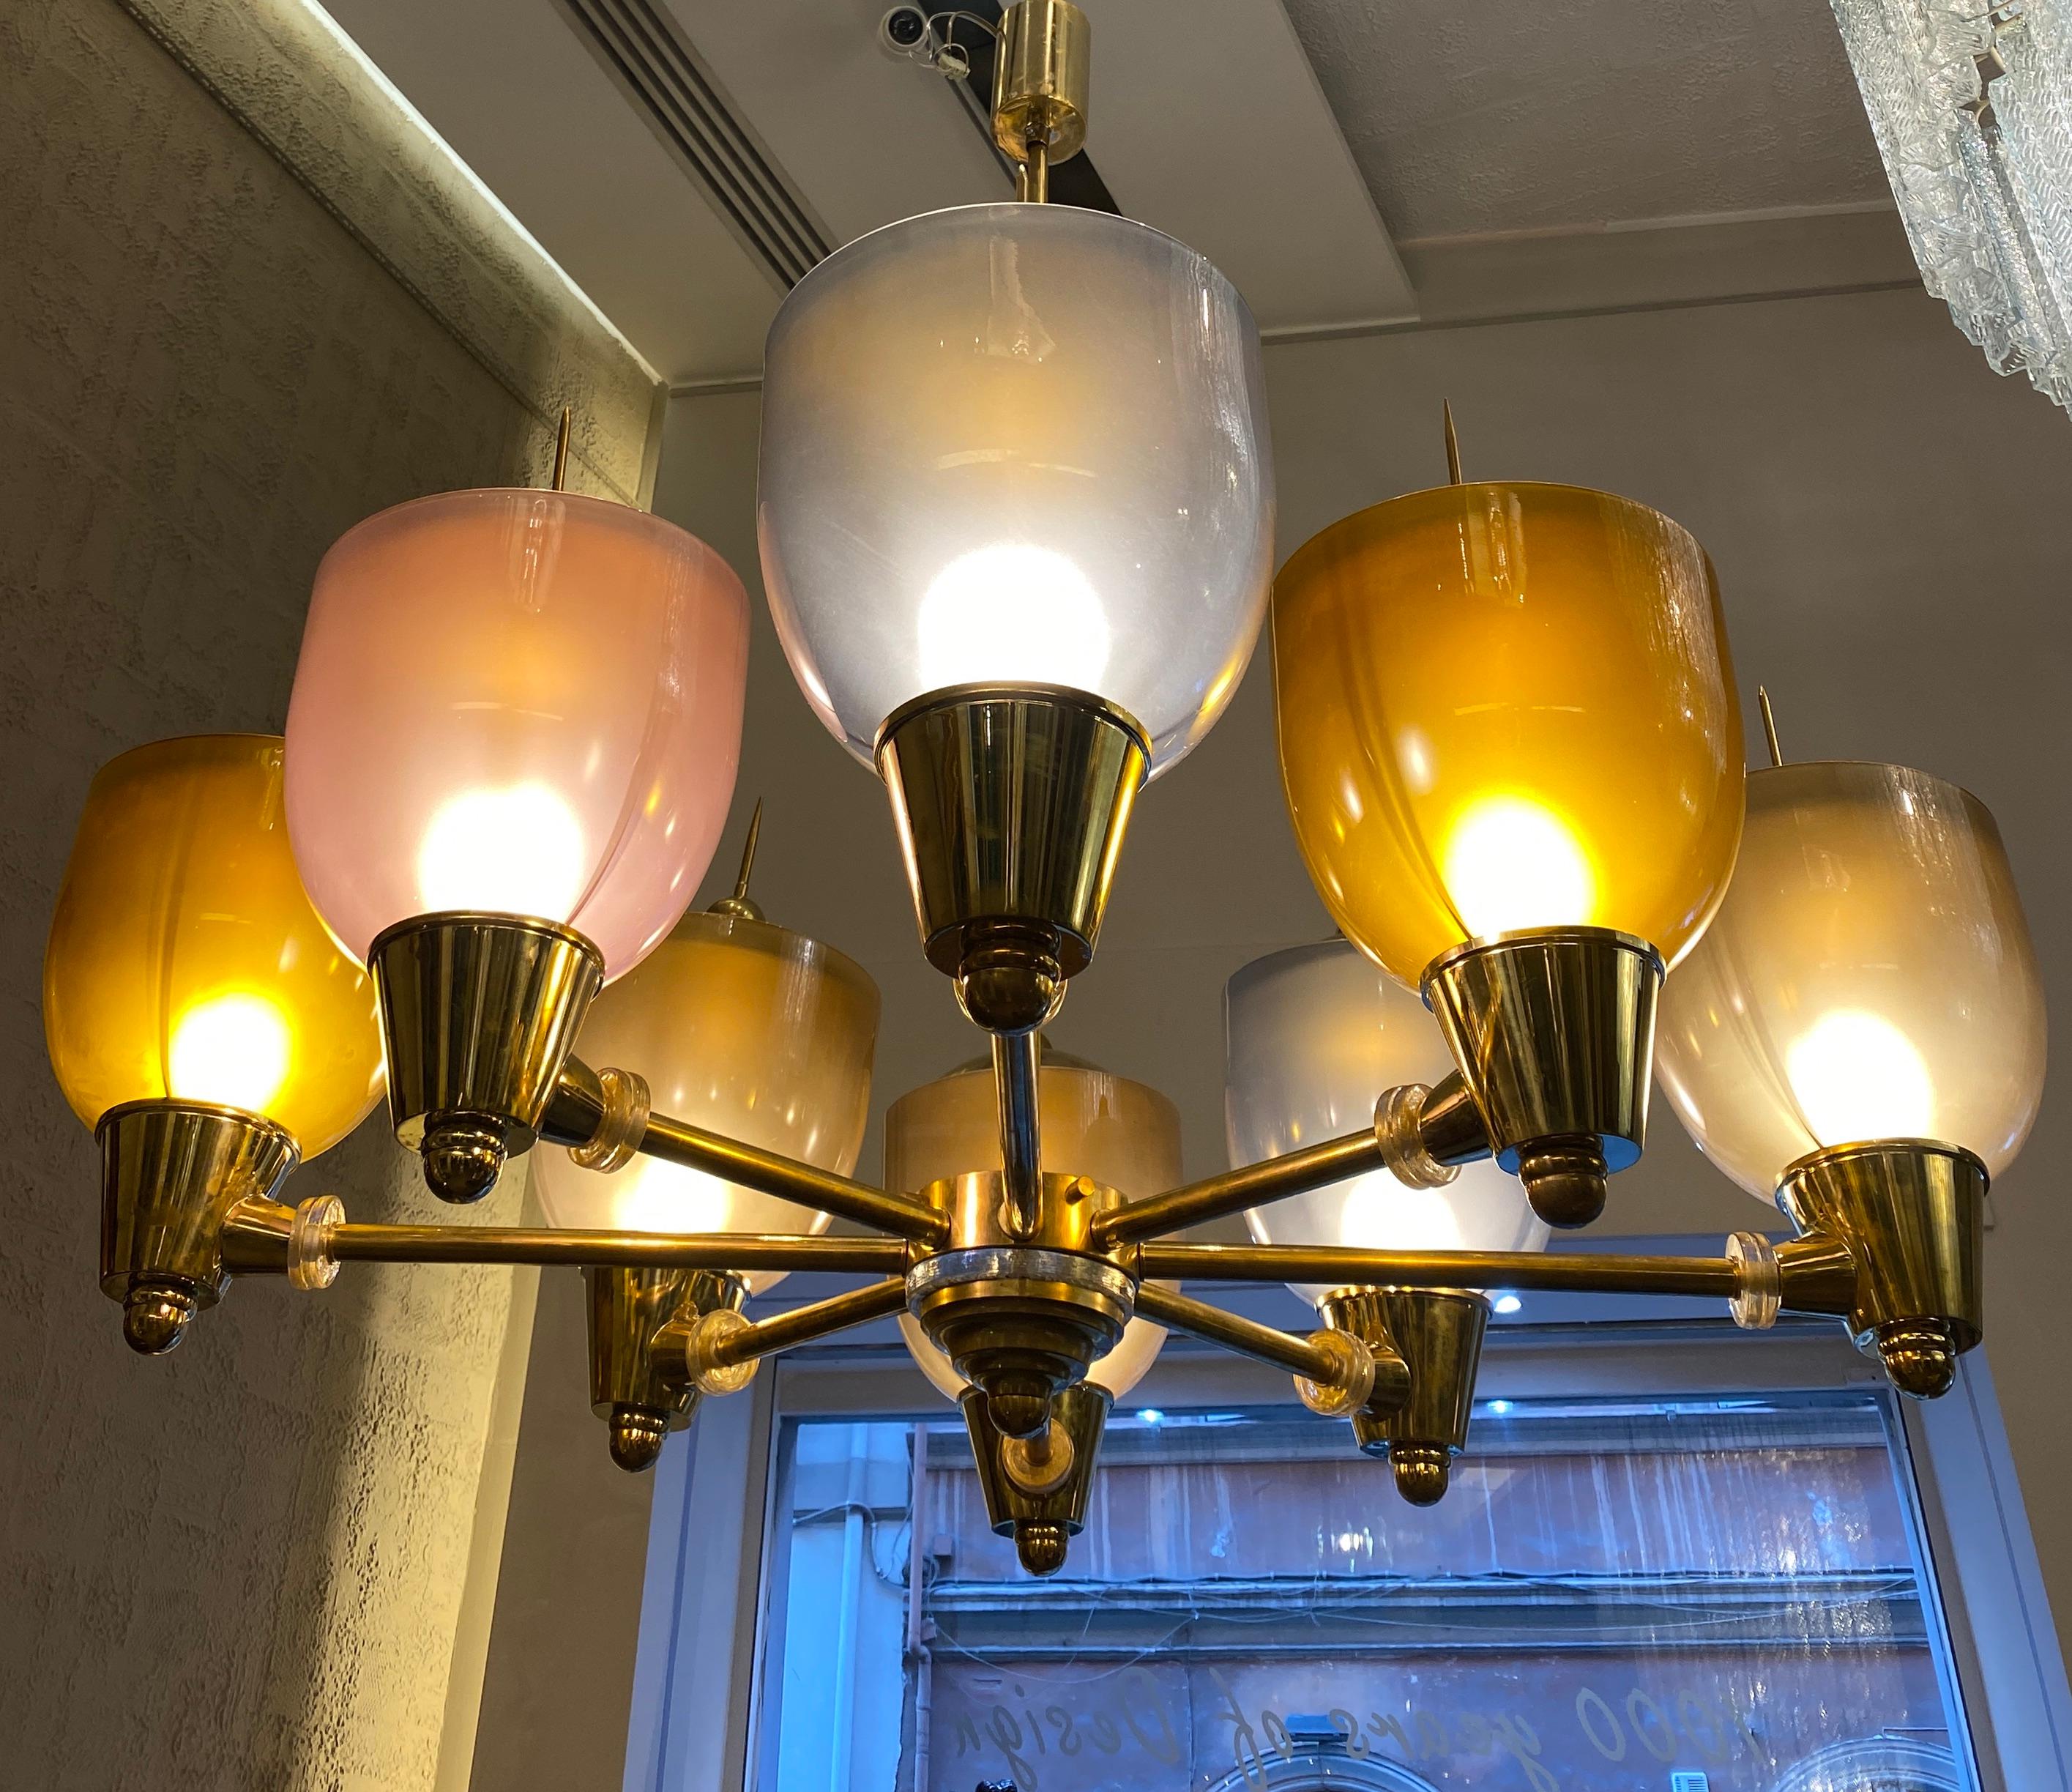 Fabuleux lustre en verre de Murano avec 8 grandes coupes précieuses multicolores sur une monture en laiton.
Ampoules : 8 ampoules : Dimension E27 (non incluse dans la vente) - convient au système électrique américain.
Condit : Parfait état et